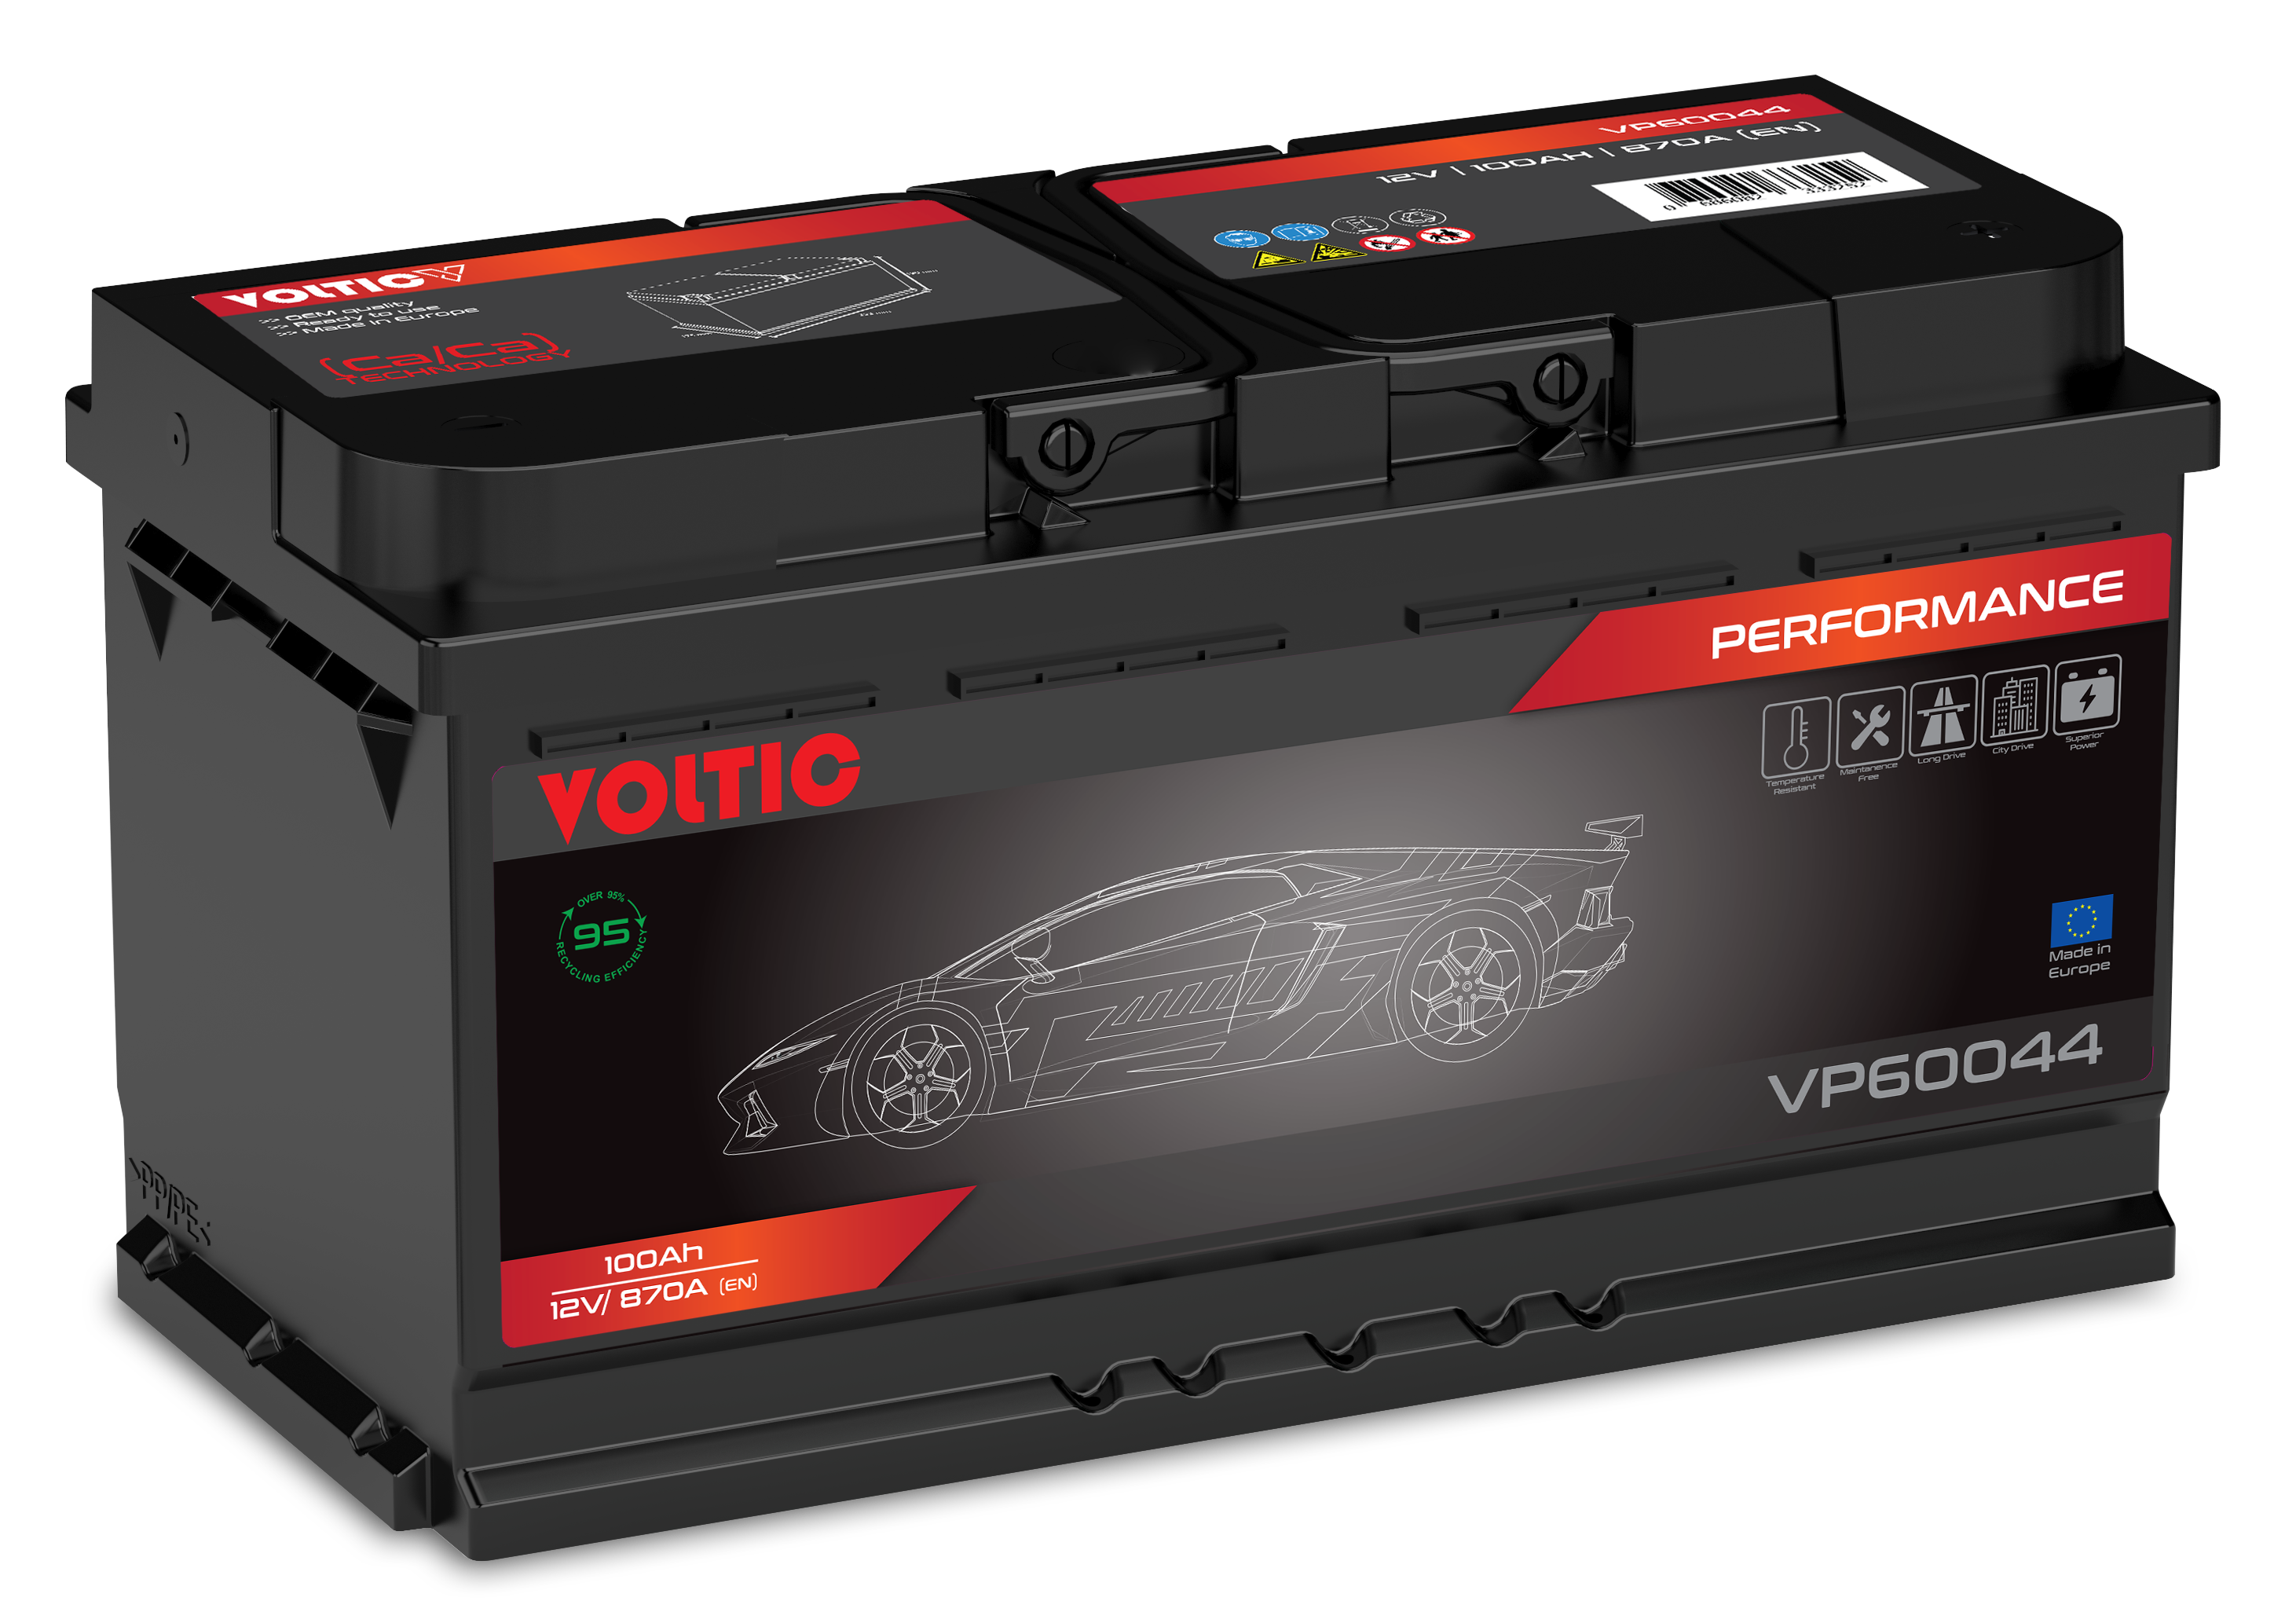 Voltic VP60044 Perfomance 100Ah Autobatterie 595 402 080